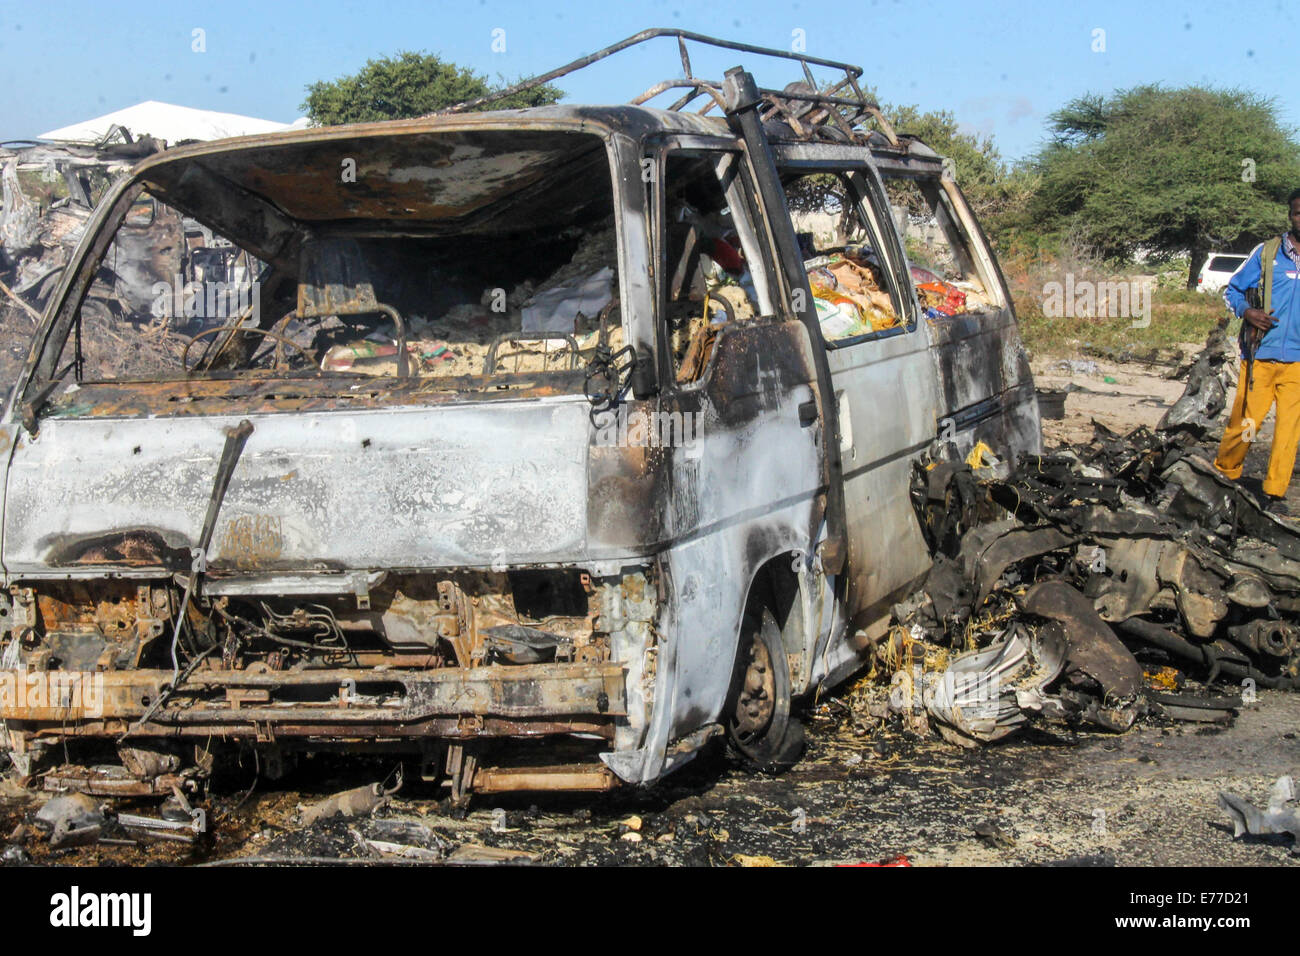 Mogadiscio. Sep 8, 2014. Photo prise le 8 septembre 2014 montre le site d'un carbomb suicide visant un convoi de la Mission de l'Union africaine en Somalie (AMISOM) sur une route reliant Mogadiscio et Afgooye, une petite ville à 20 km à l'ouest de la capitale. Le groupe islamiste Al-Shabaab le lundi a revendiqué la responsabilité des attentats-suicide à la voiture 1 qui a tué au moins 12 personnes en Somalie, selon des sources policières. L'autre carbomb suicide blast a frappé un poste de contrôle militaire à la périphérie de Mogadiscio le lundi, blessant deux personnes dont un fonctionnaire local. Credit : Faisal Miu/Xinhua/Alamy Live News Banque D'Images